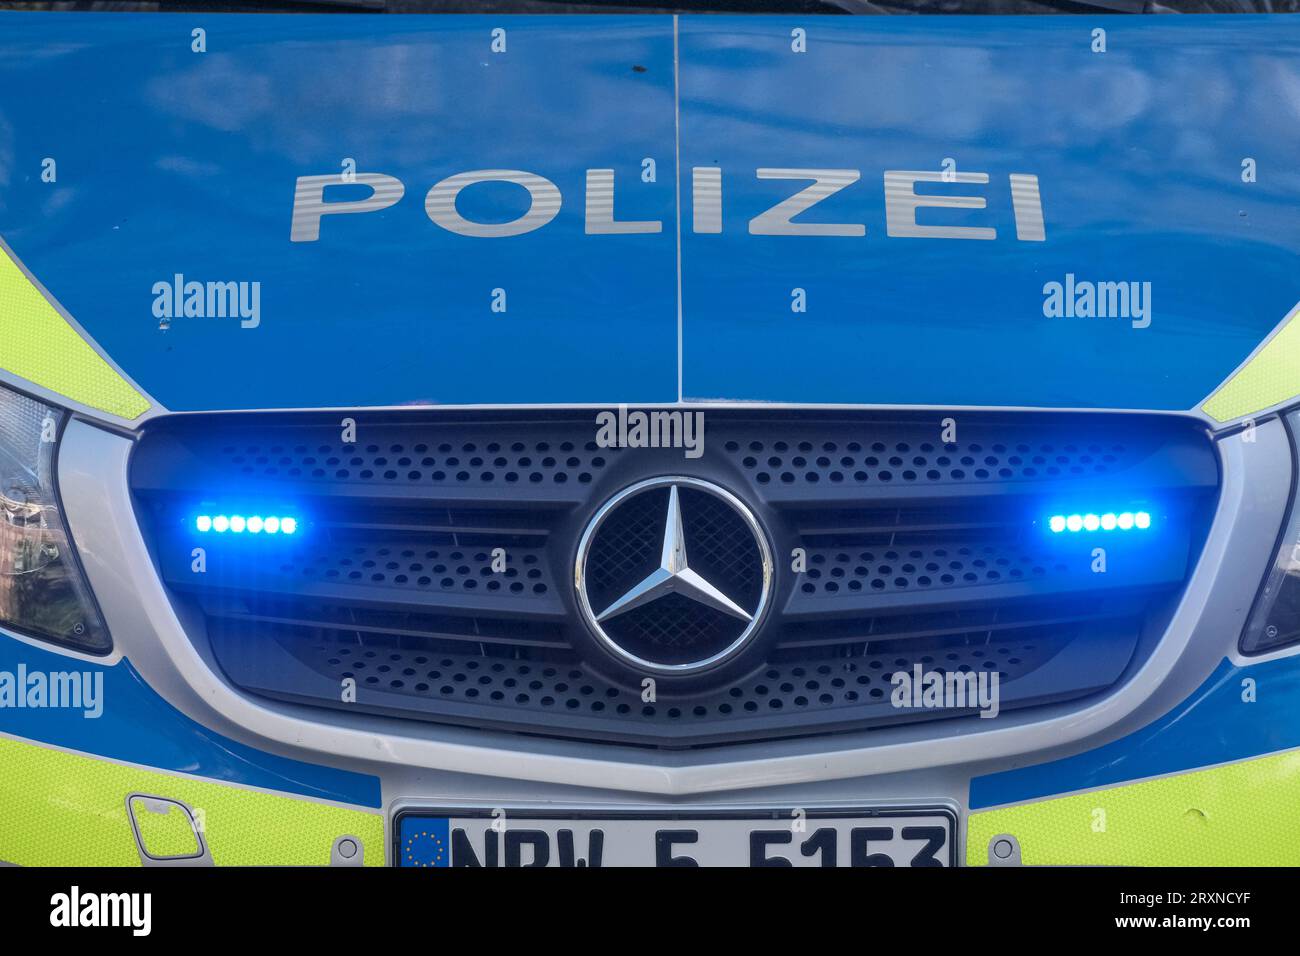 https://c8.alamy.com/comp/2RXNCYF/dsseldorf-26092023-polizei-auto-polizeiauto-polizeiautos-polizeiwagen-blaulicht-streifenwagen-rundumleuchte-sondersignal-sondersignale-rundumkennleuchte-kennleuchte-blaues-blinklicht-lichtsignal-einsatzfahrzeug-einsatzfahrzeug-rkl-drehlicht-wegerecht-dsseldorf-nordrhein-westfalen-deutschland-dusseldorf-26-09-2023-police-car-police-car-police-cars-blue-light-patrol-car-rotating-beacon-special-signal-special-signals-rotating-beacon-beacon-blue-flashing-light-light-signal-emergency-vehicle-emergency-vehicle-rkl-rotating-light-right-of-way-dusseldorf-north-rhine-westphalia-germany-2RXNCYF.jpg